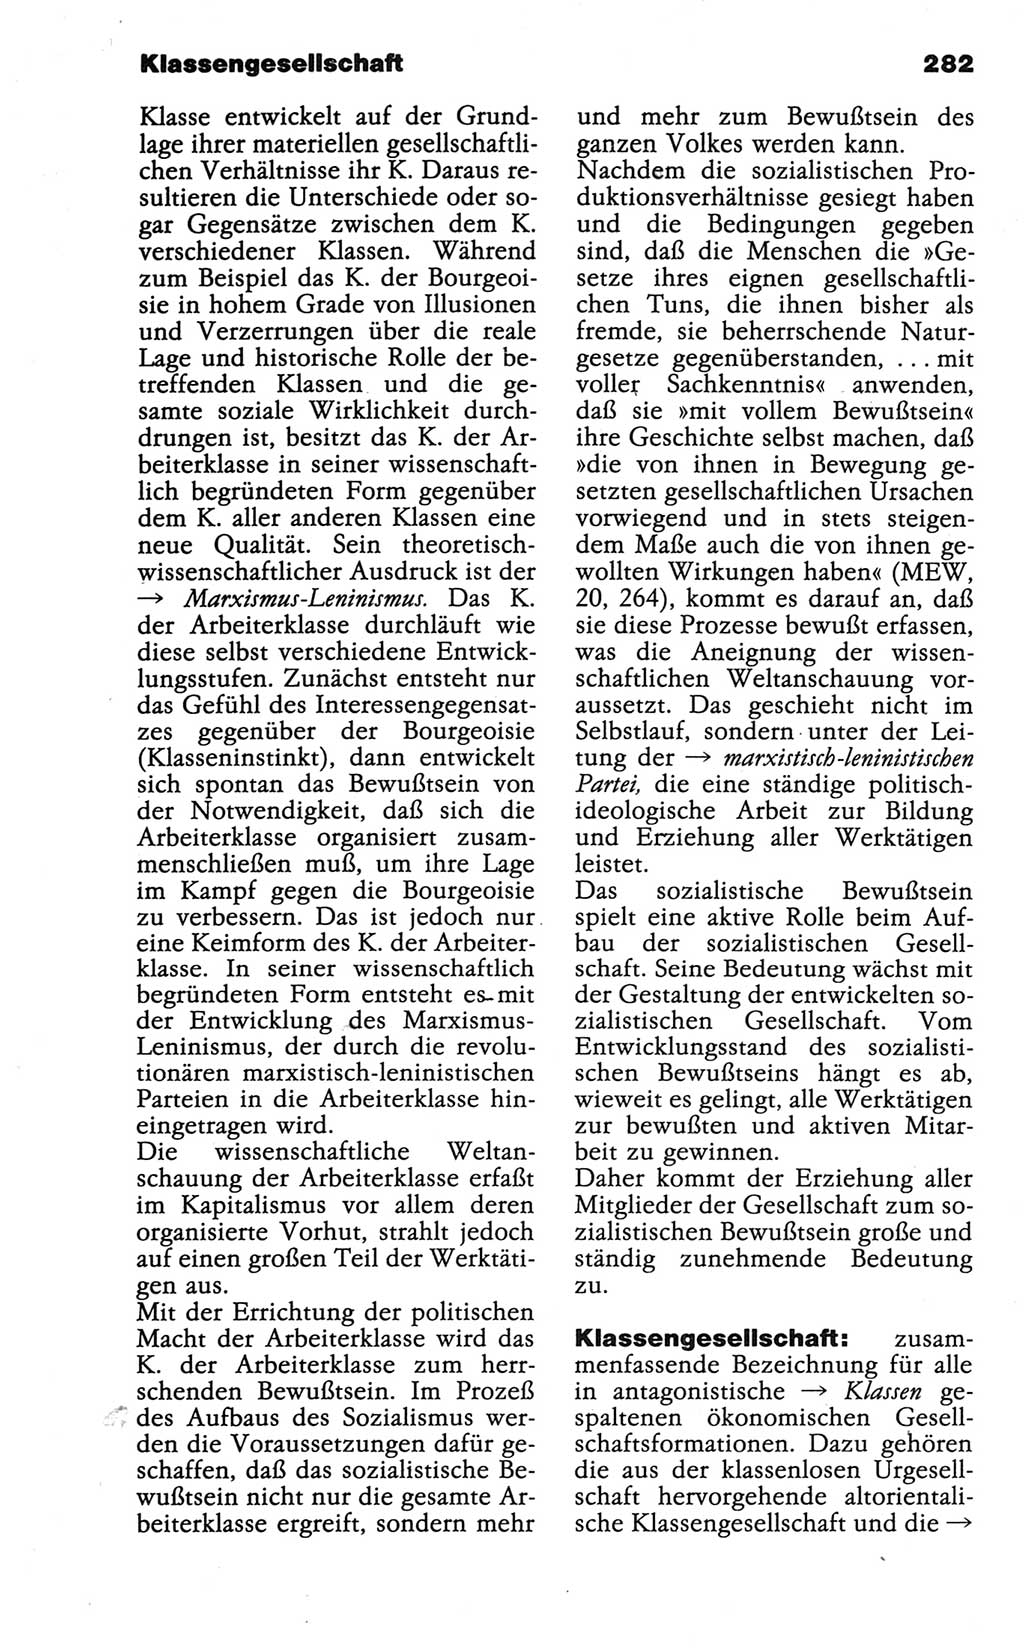 Wörterbuch der marxistisch-leninistischen Philosophie [Deutsche Demokratische Republik (DDR)] 1986, Seite 282 (Wb. ML Phil. DDR 1986, S. 282)